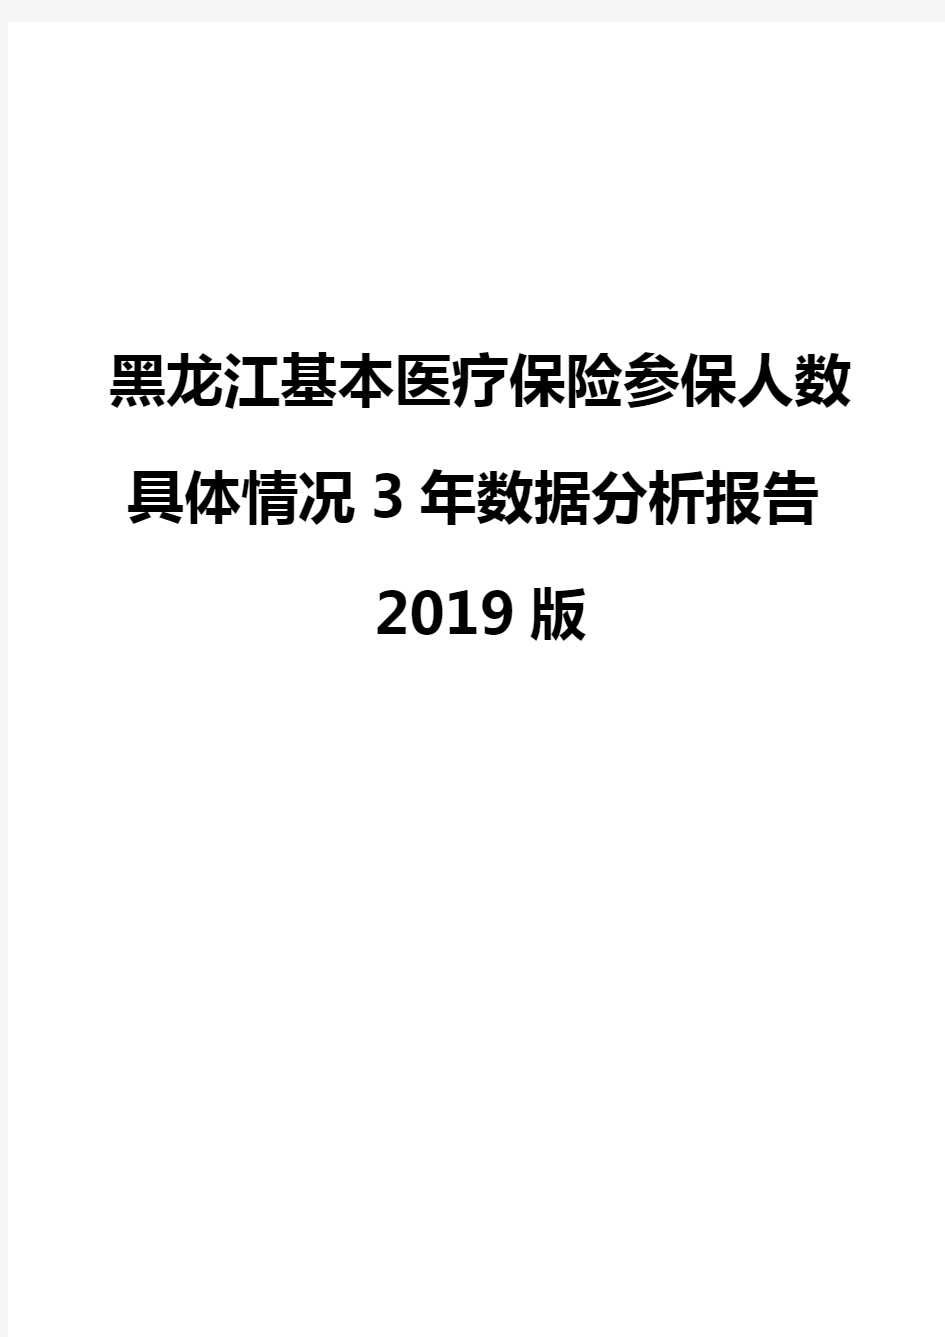 黑龙江基本医疗保险参保人数具体情况3年数据分析报告2019版